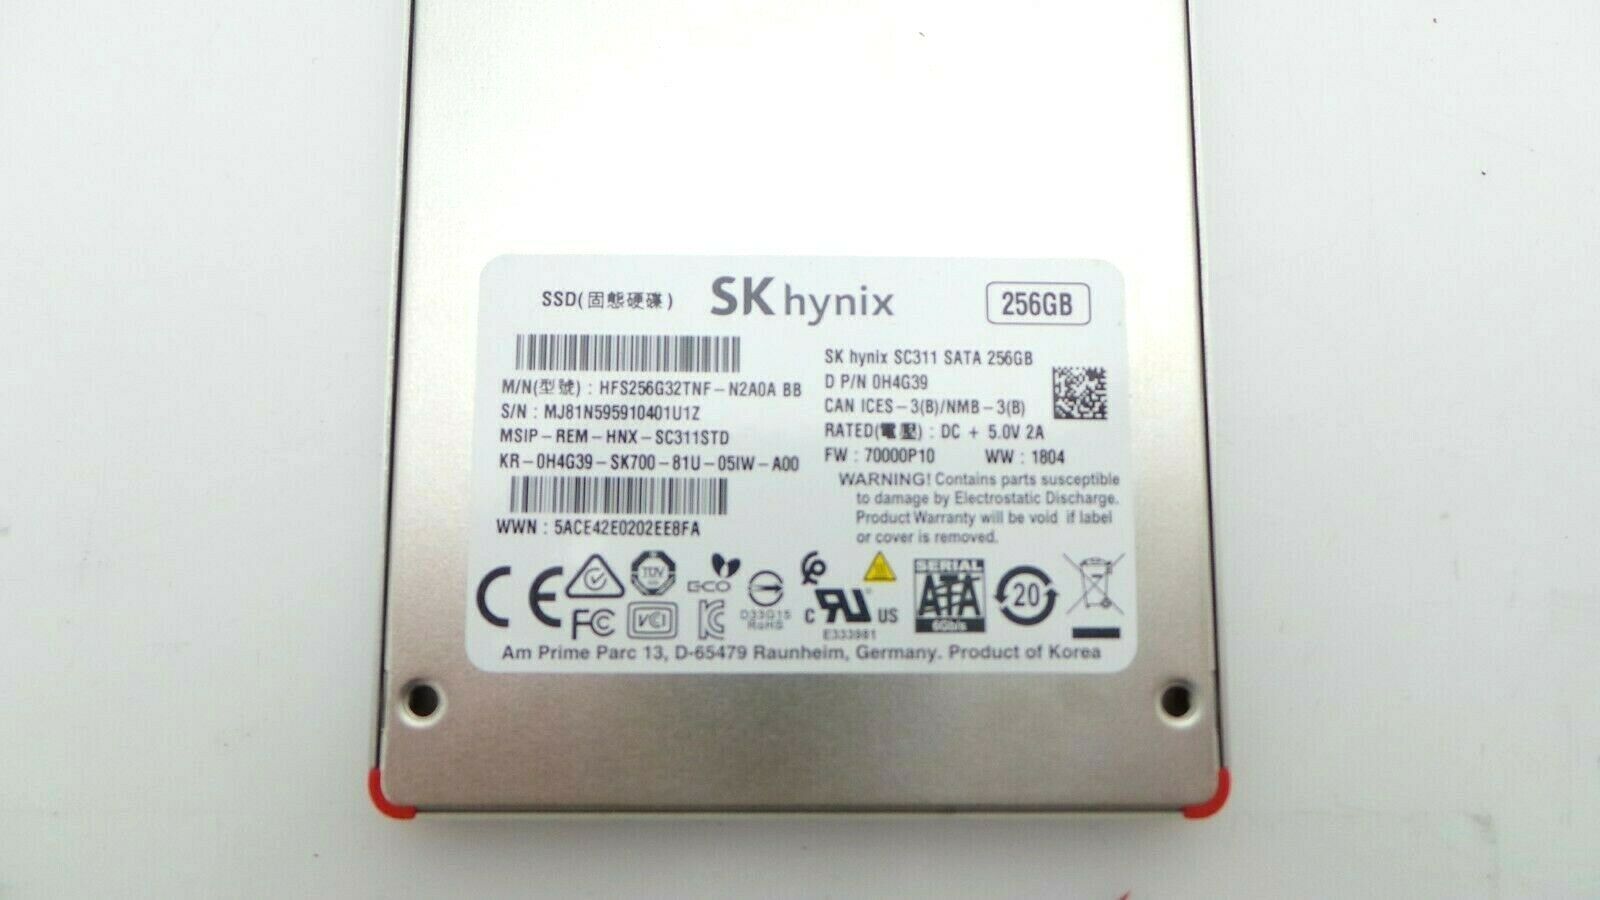 Hynix HFS256G32TNF-N2A0ABB 256GB SSD SATA 2.5" 6G, Used